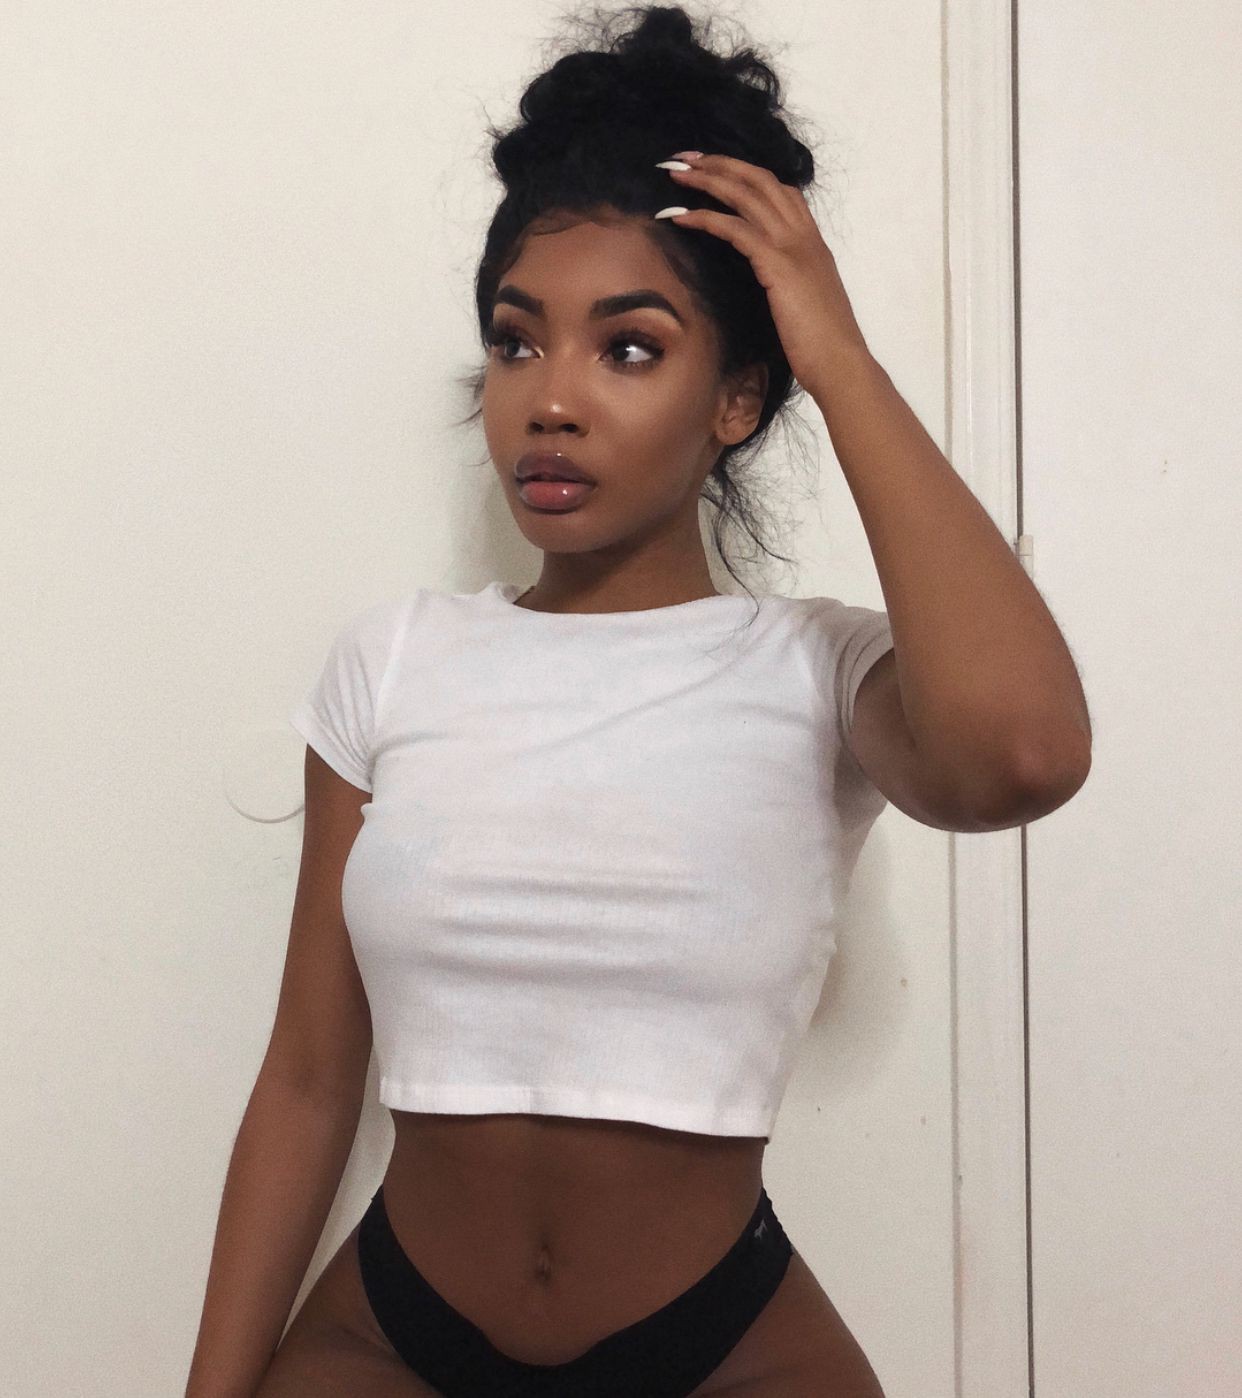 Sexy Black Girl Photos Ebony Beauties: Hot Black Girls,  Hot Girls,  Hot Instagram Models,  Hot Curvy Girls  